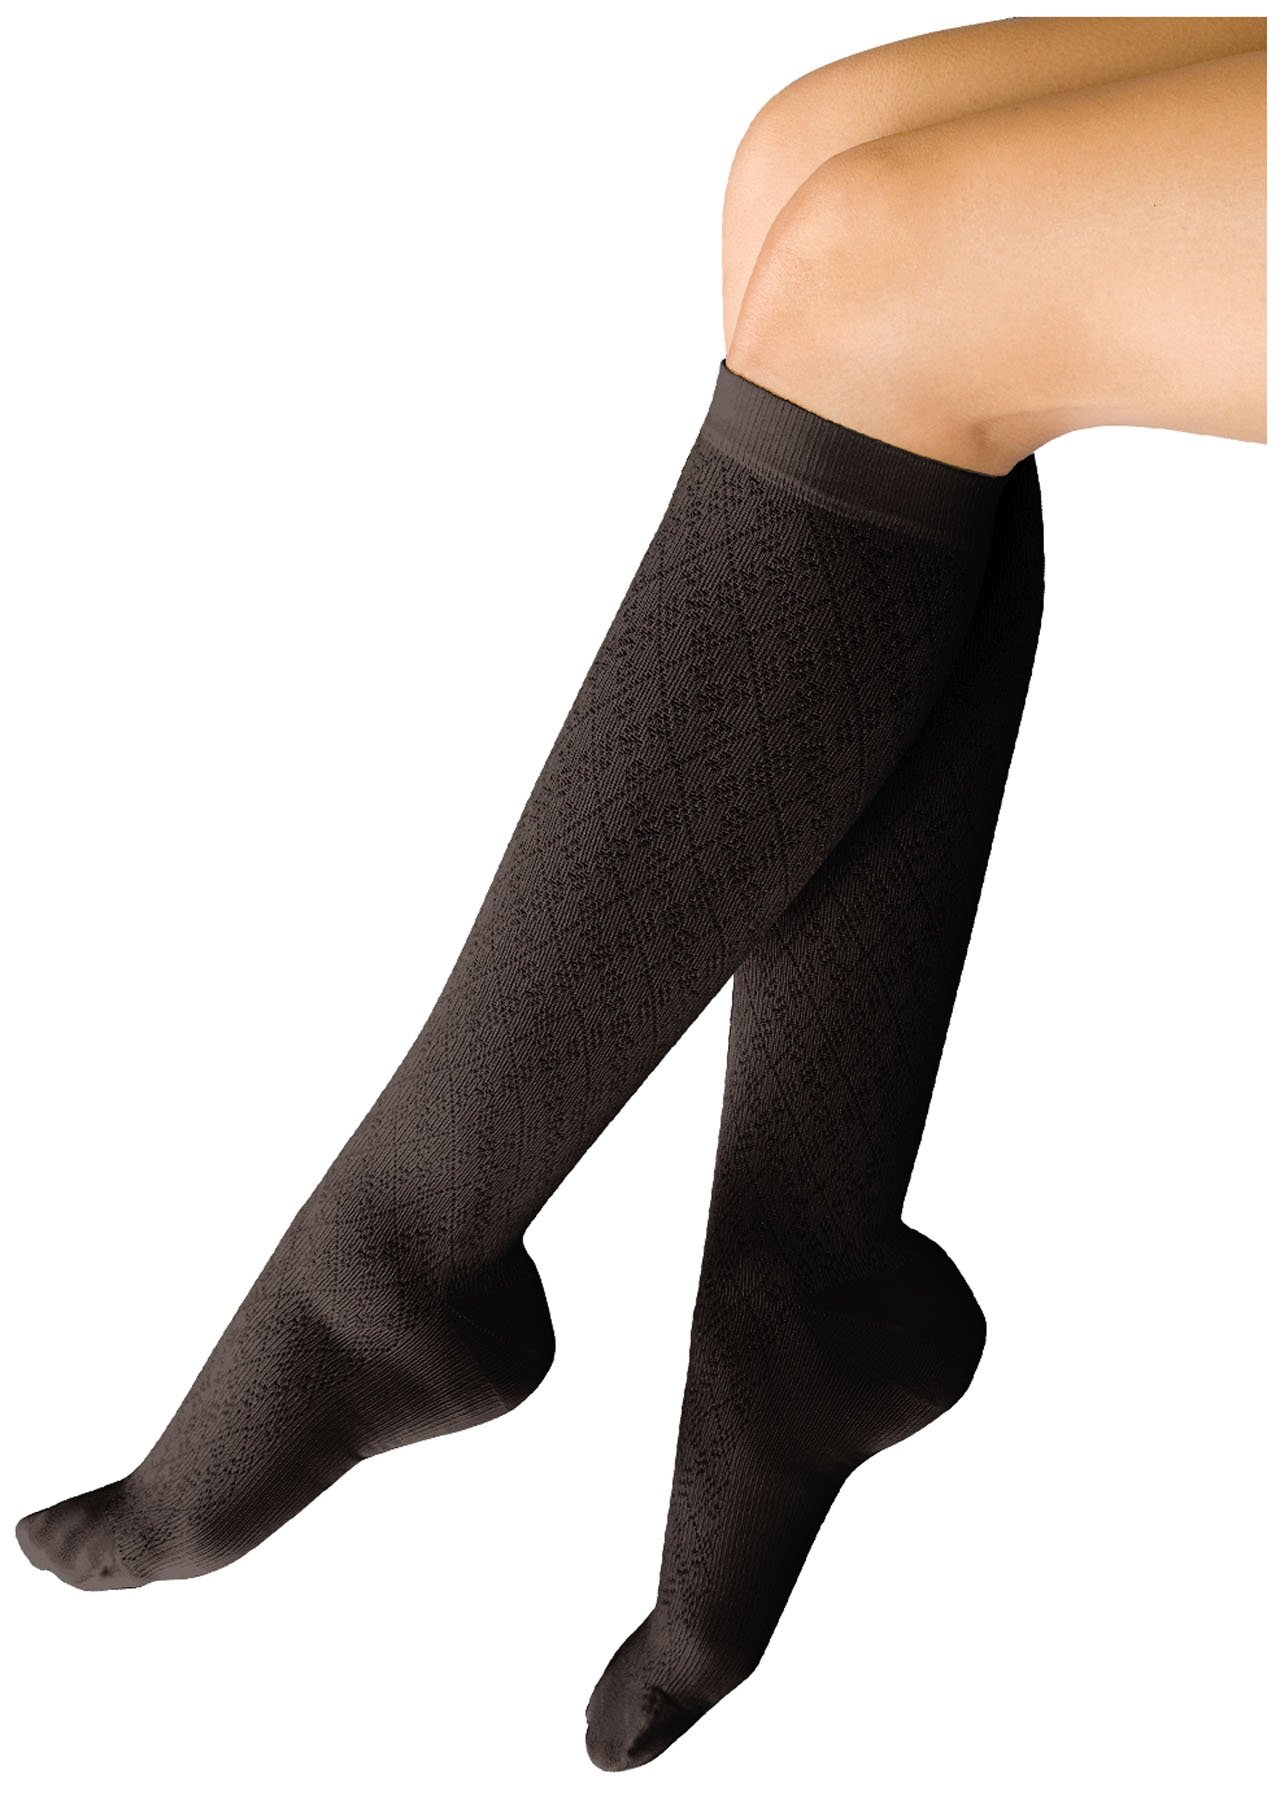 Cherokee Hosiery 10-15 Hg Support Trouser Socks TF953